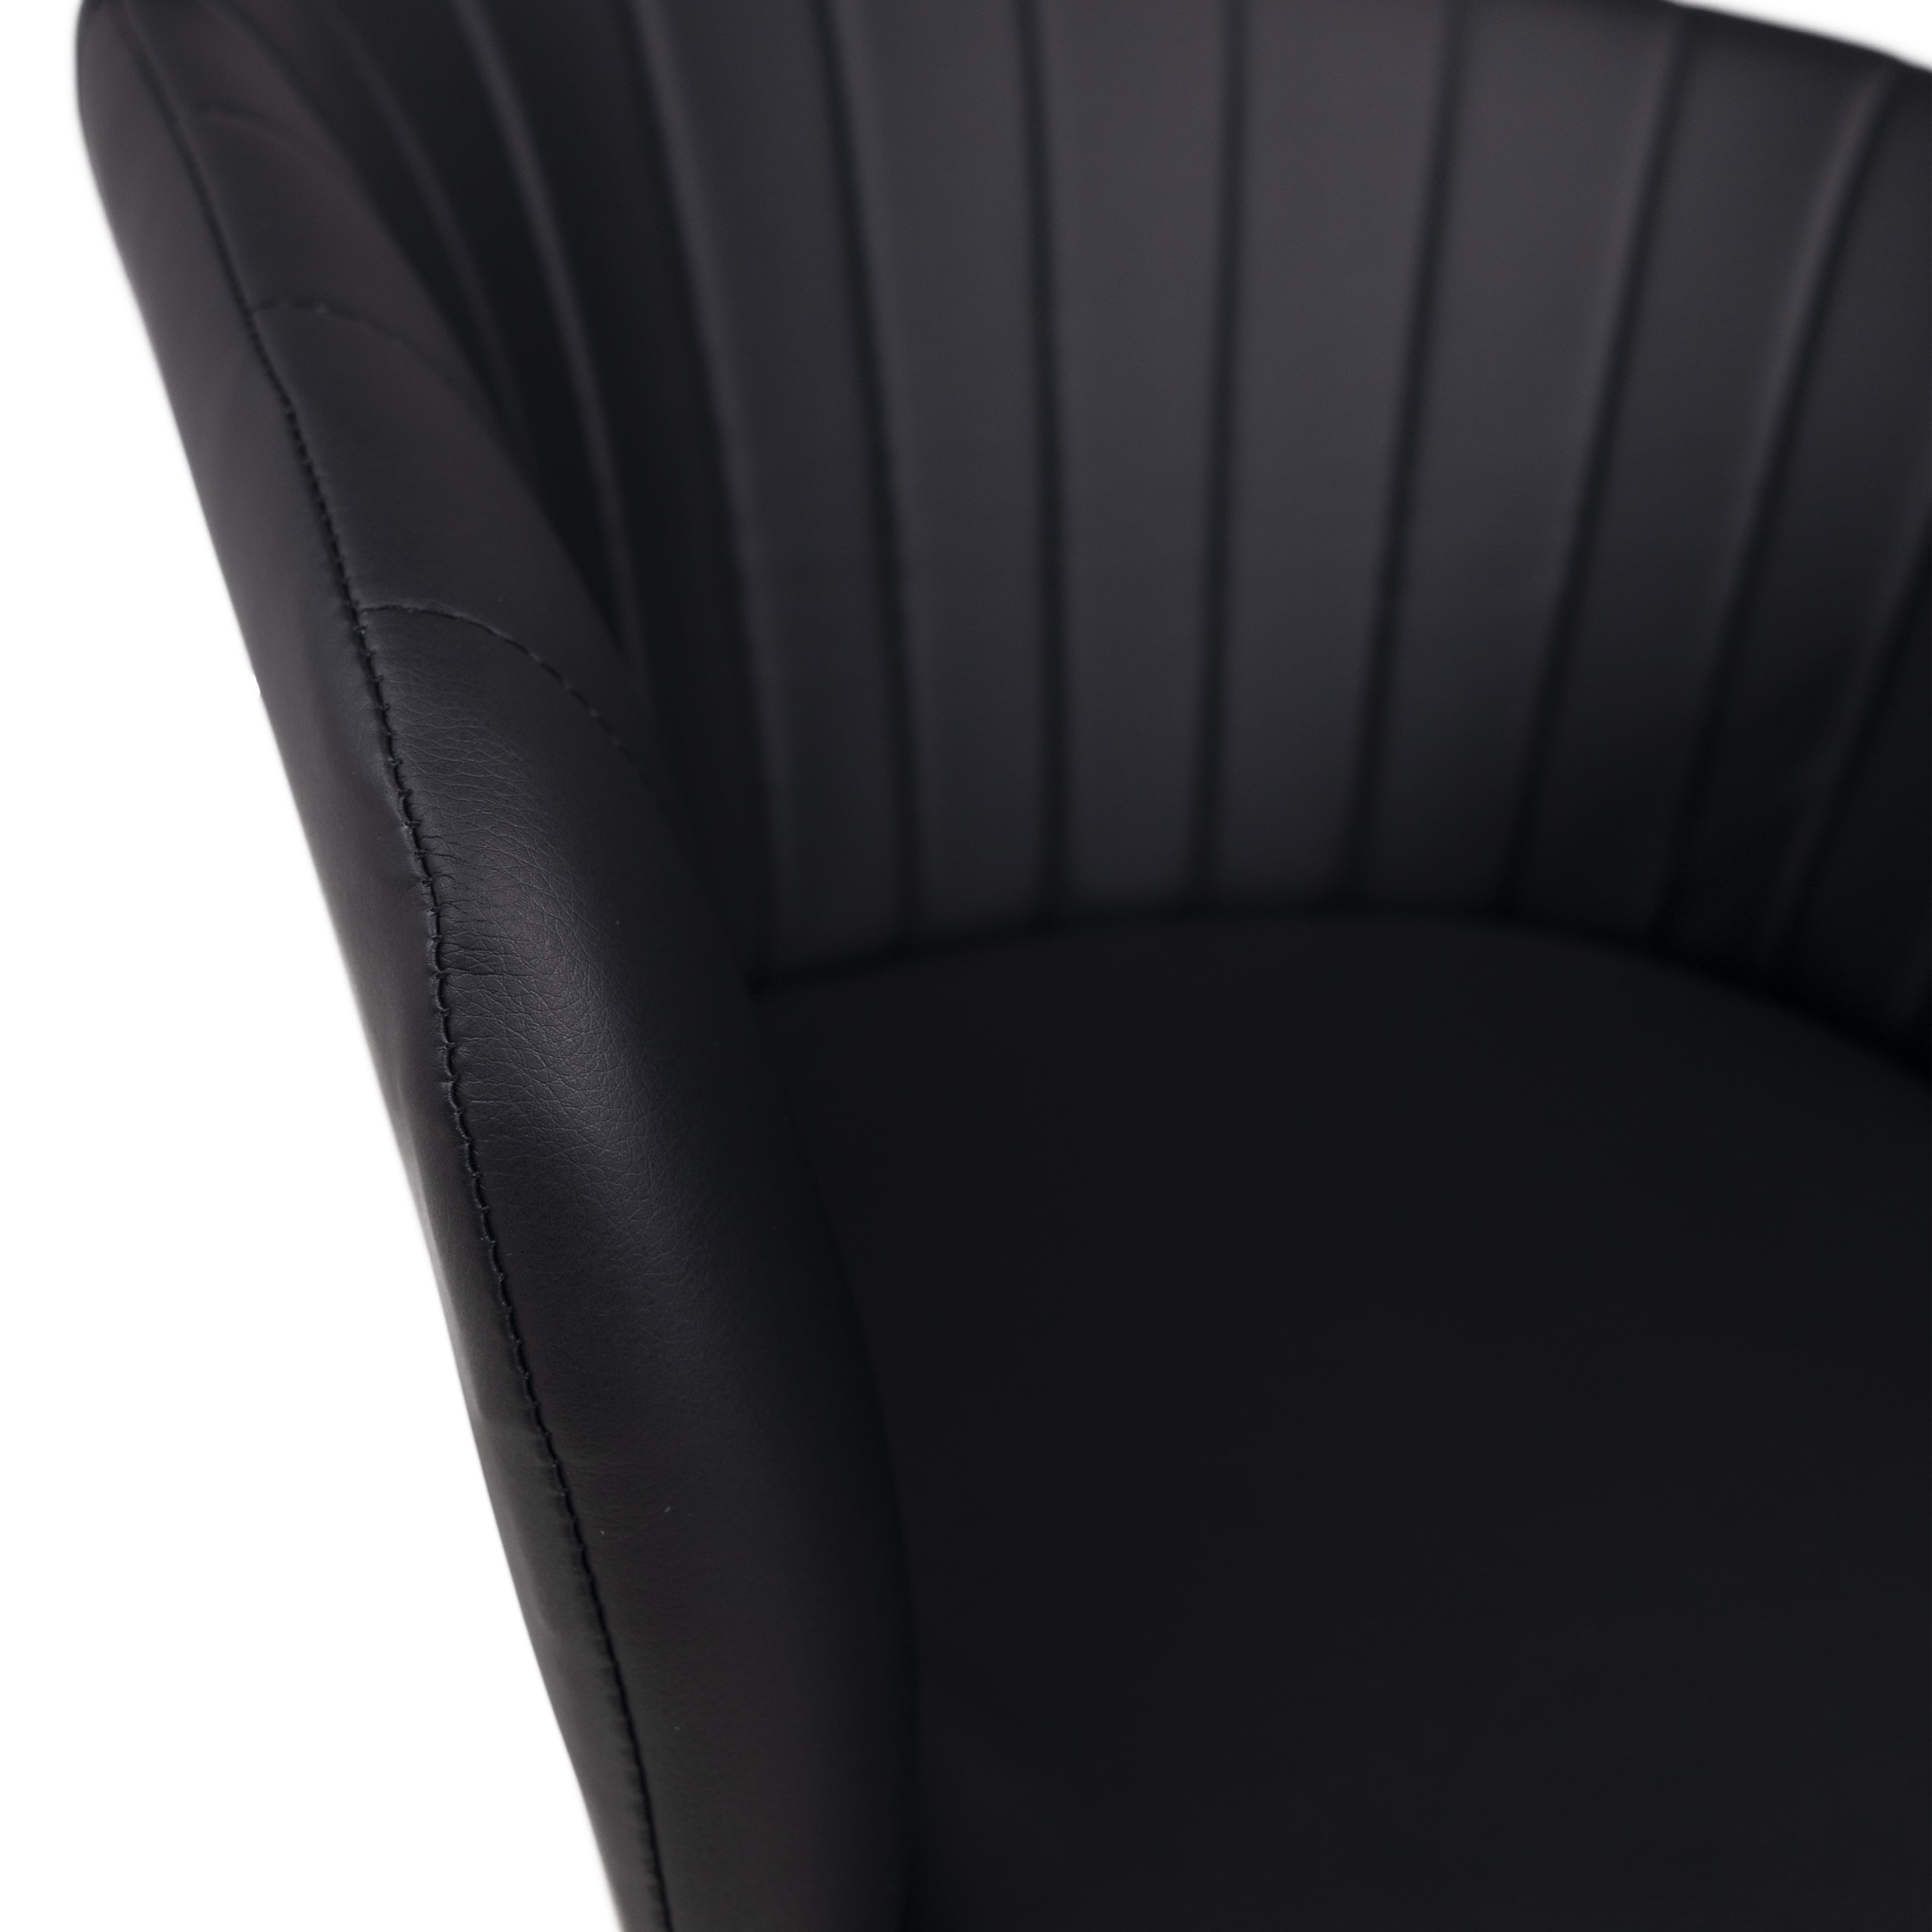 Кресло george black экокожа черный